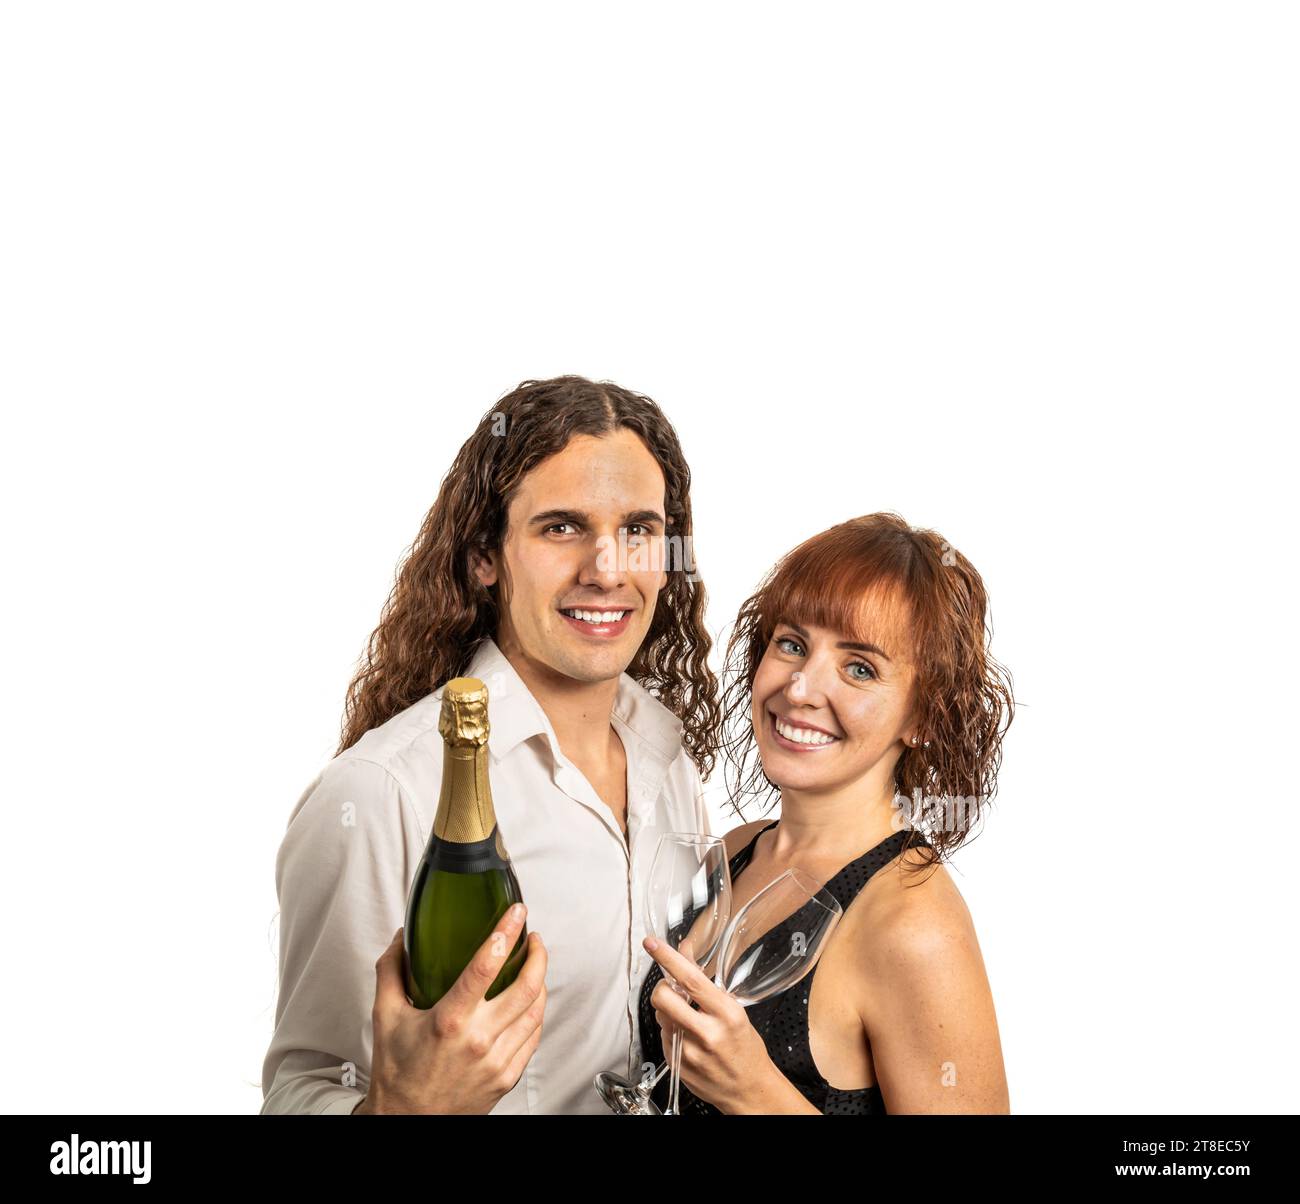 Horizontales, mittleres Nahfoto kaukasisches Paar mittlerer Erwachsener, elegante Kleider. Wir feiern das neue Jahr mit Champagner. Weißer Hintergrund. Kopierbereich. Stockfoto